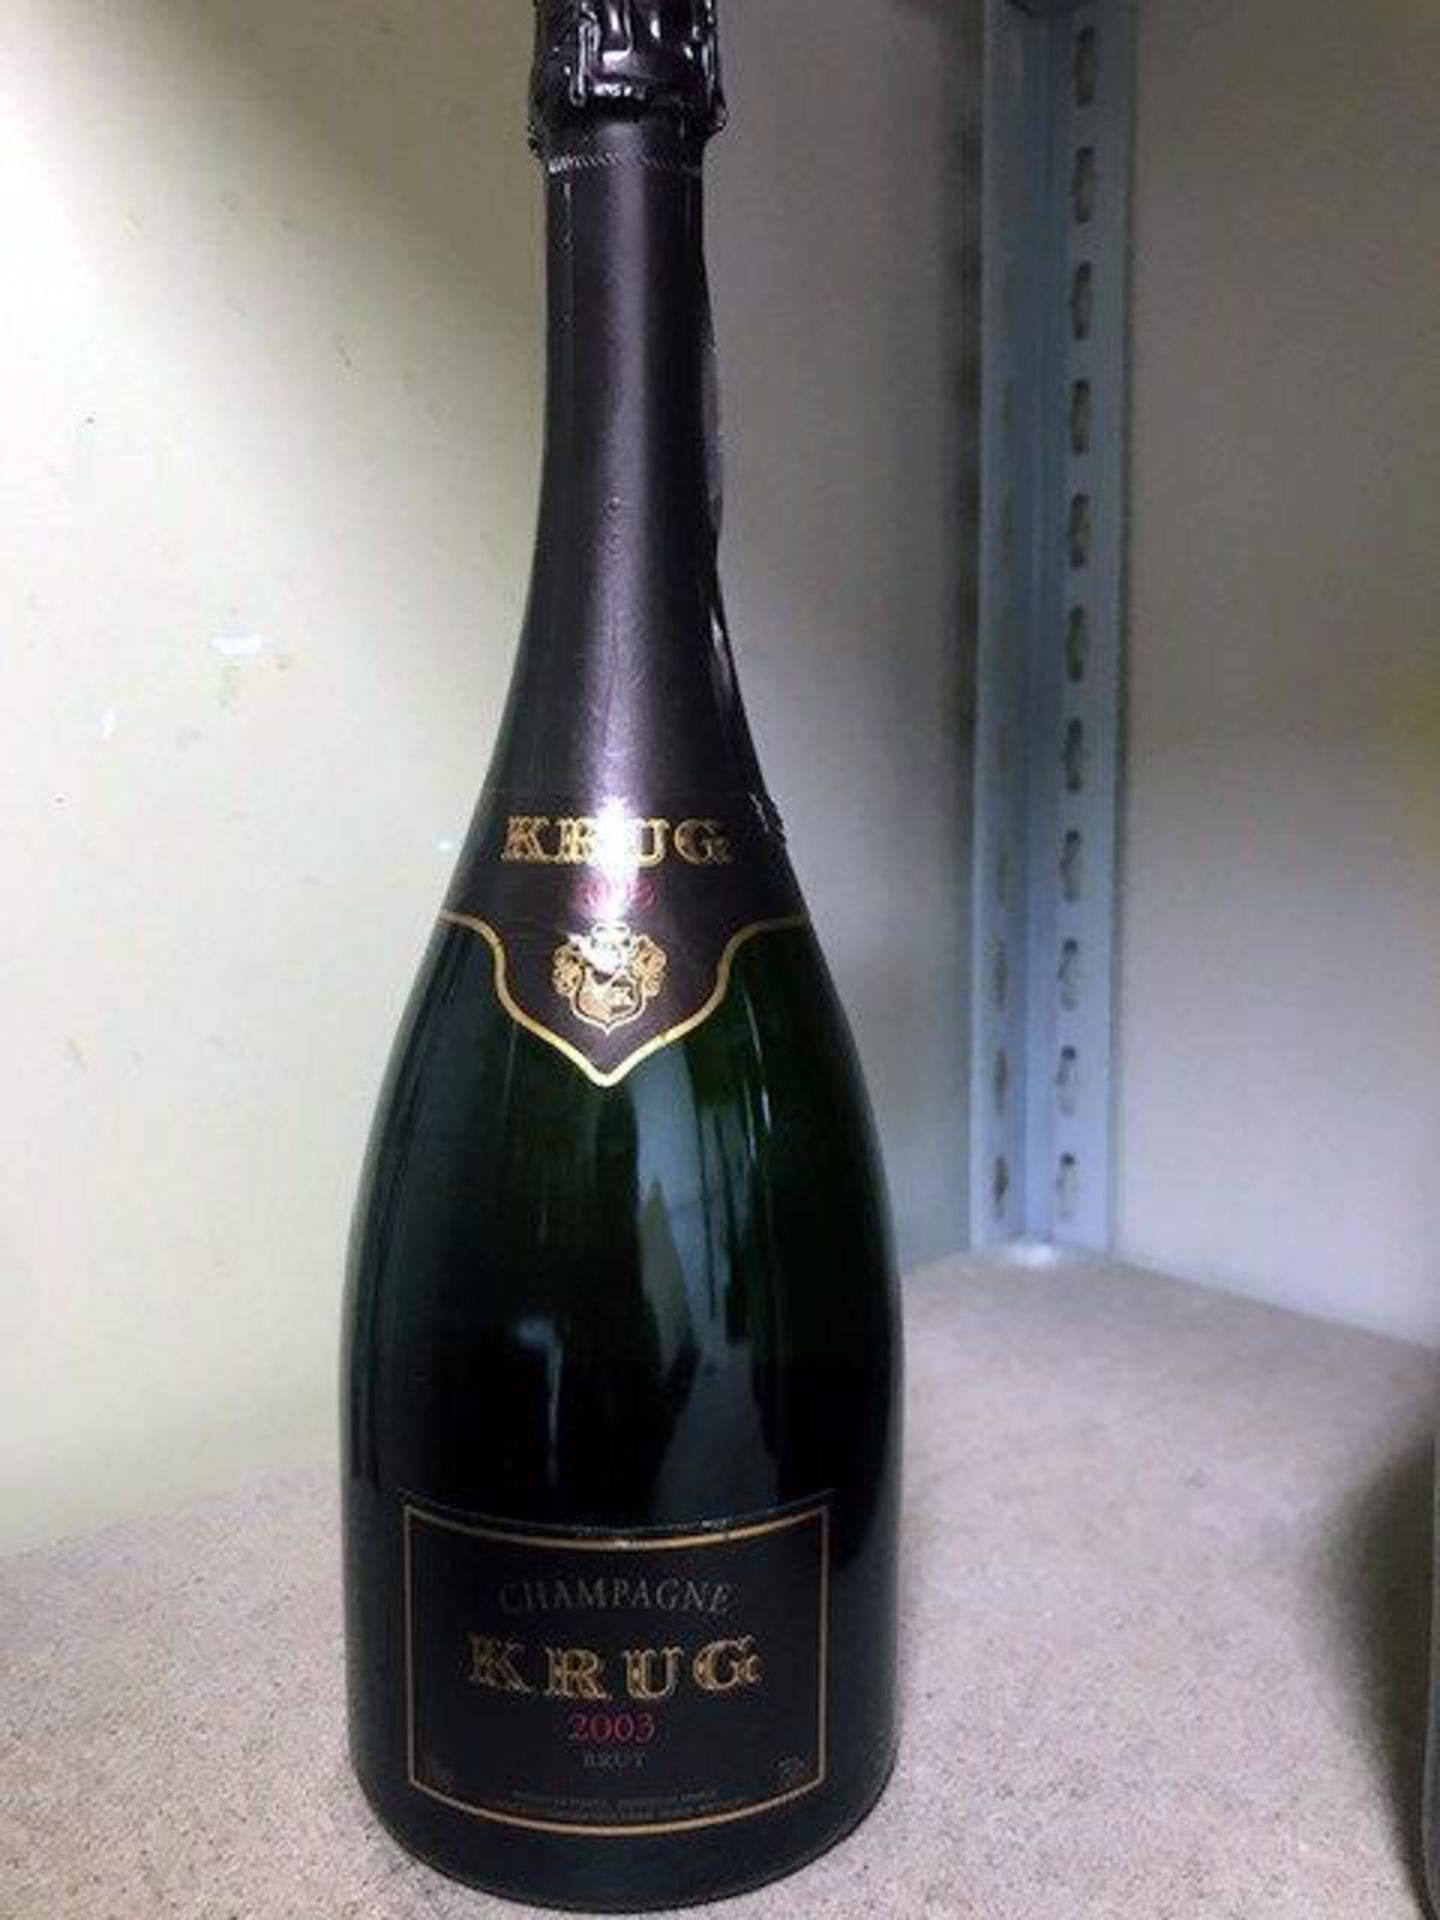 Champagne -Krug Vintage 2003 750ml